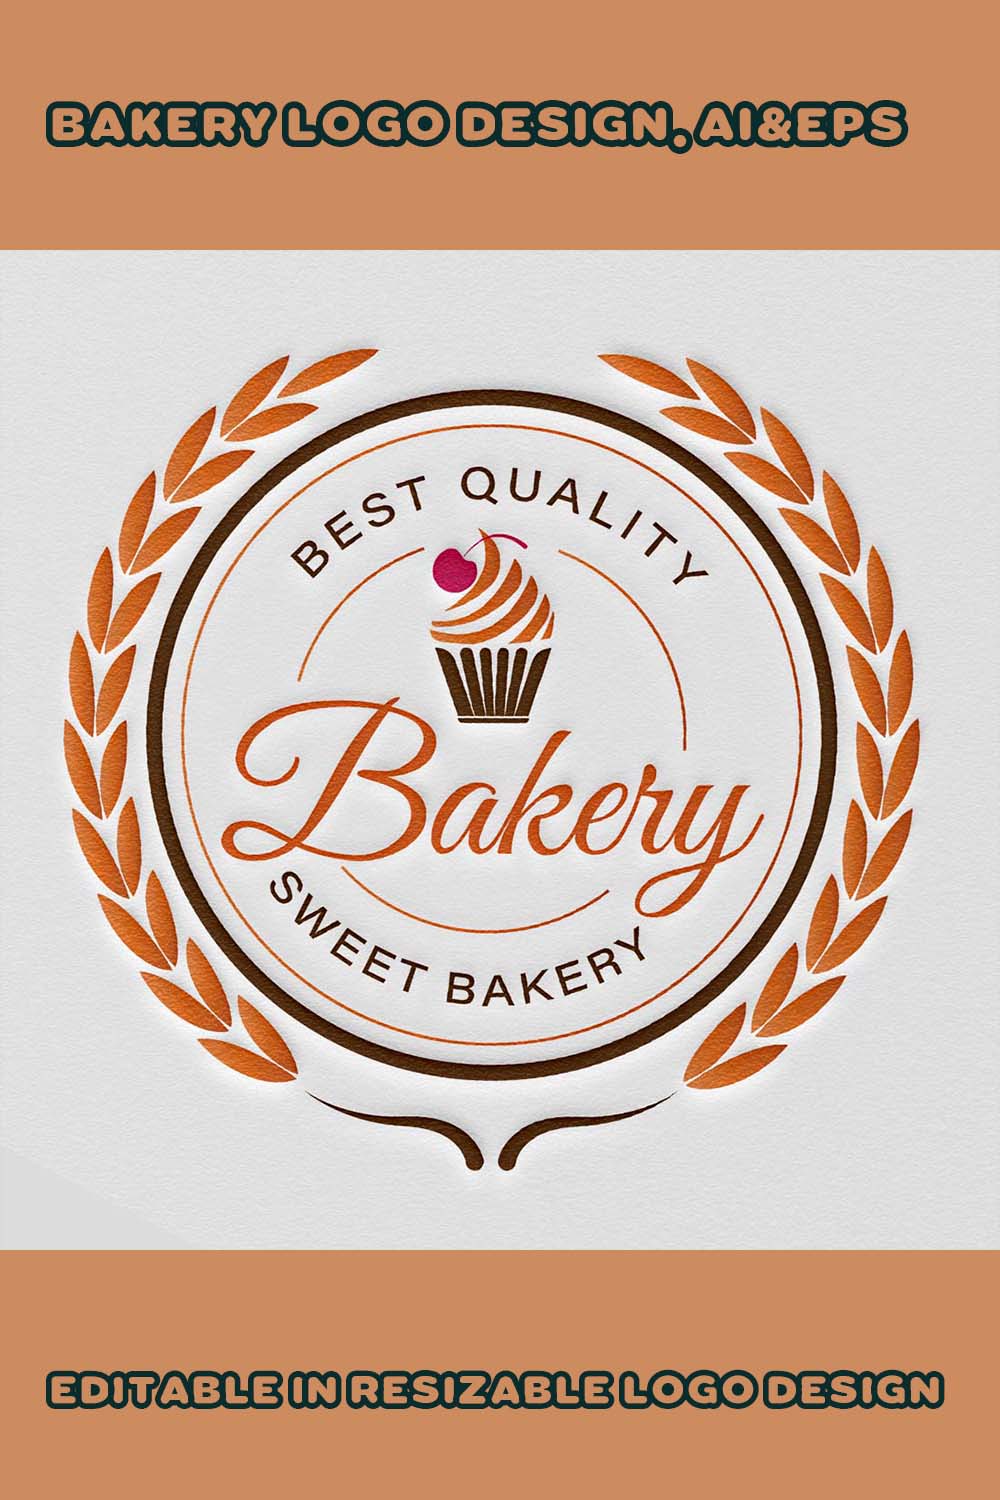 Bakery logo design of pinterest.